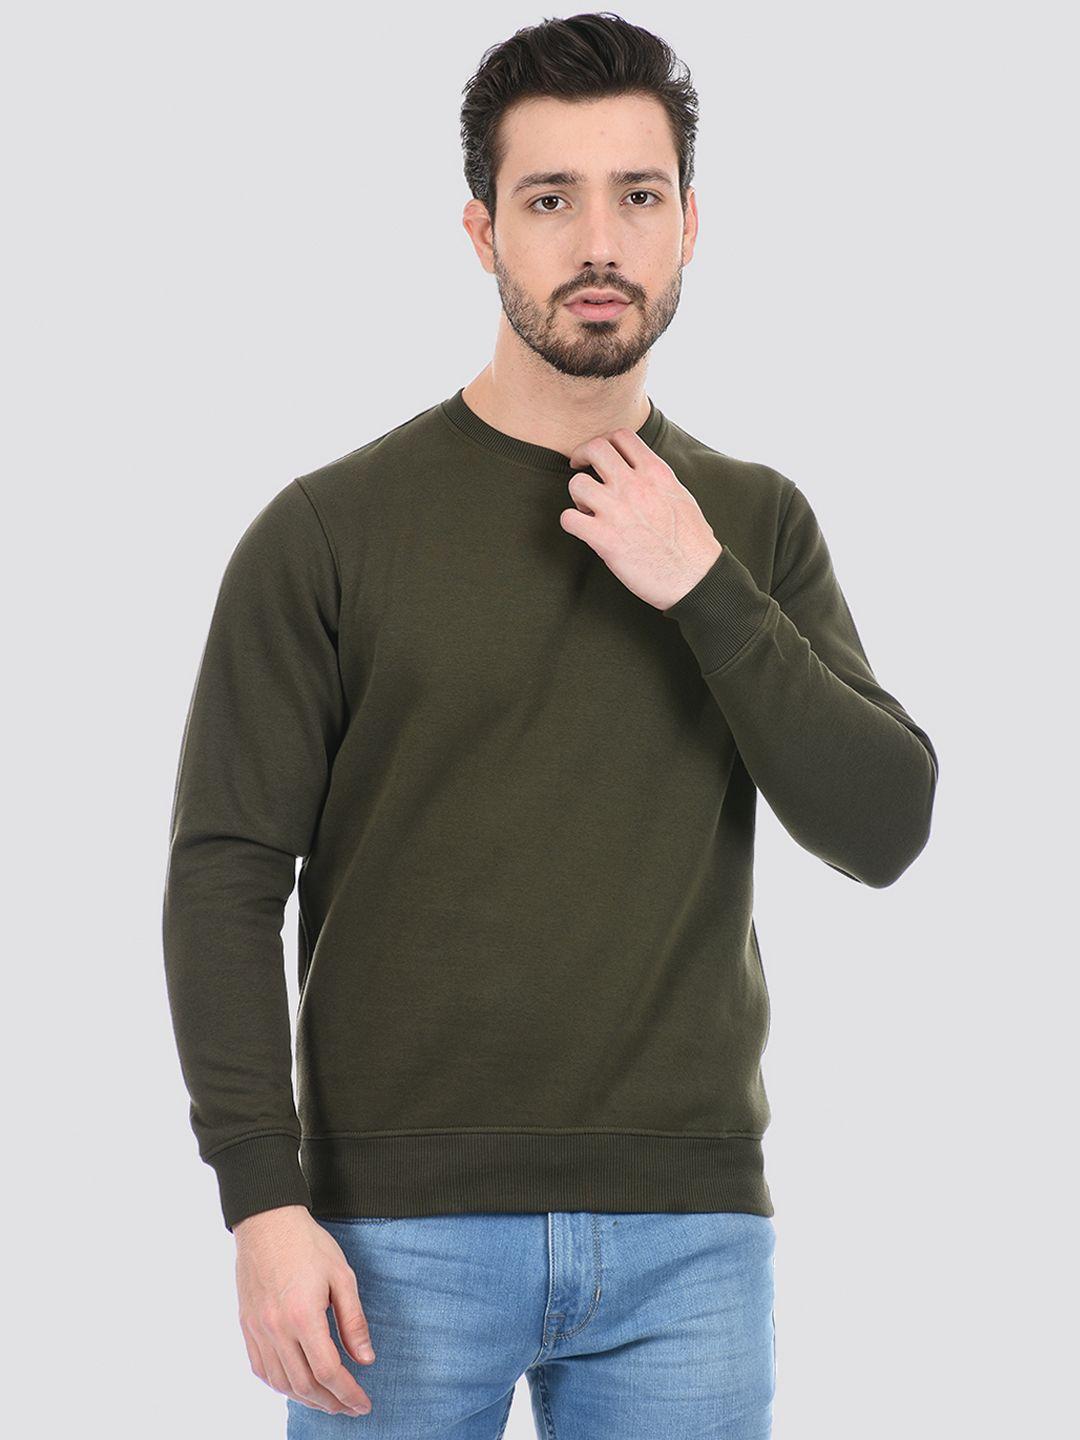 cloak & decker by monte carlo men green cotton sweatshirt